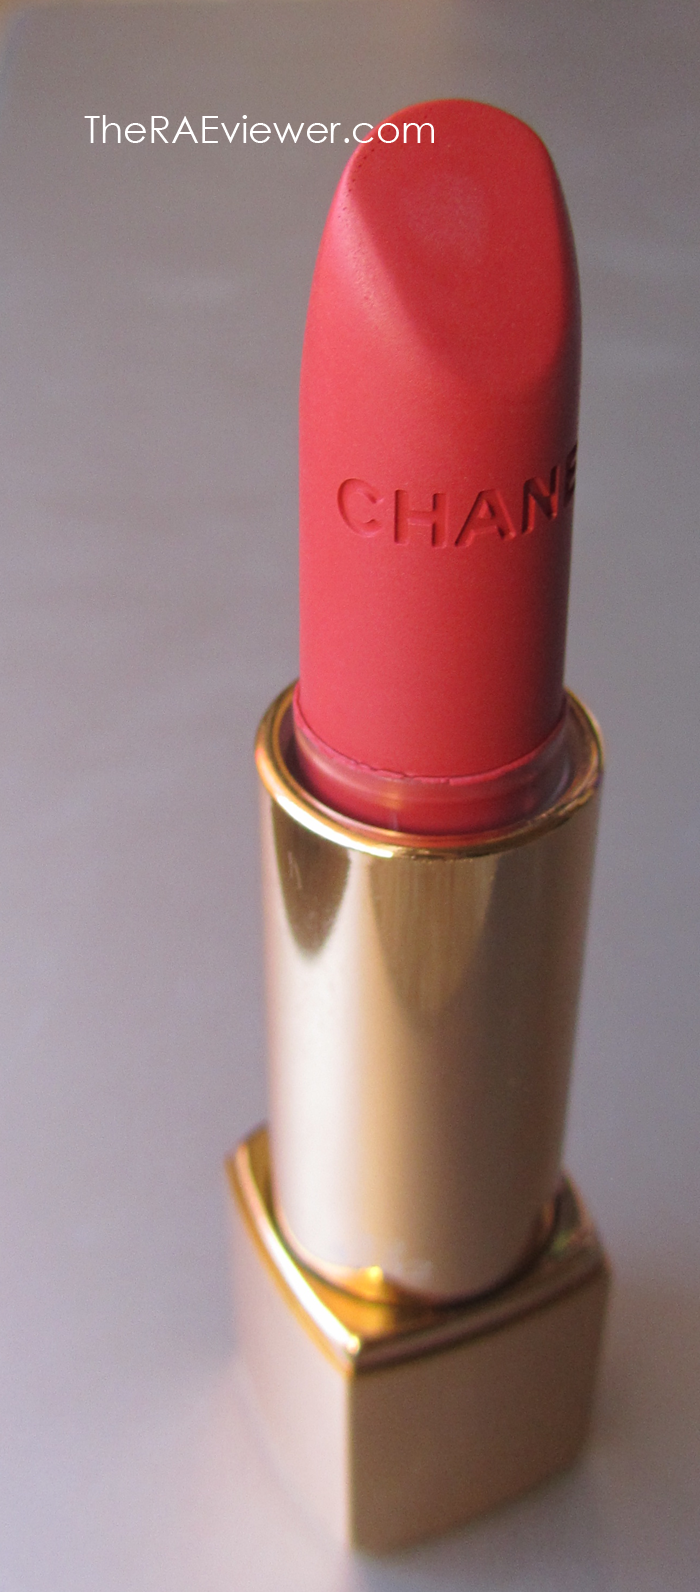 Chanel Rouge Allure Velvet matte lipstick in La Fascinante - My Beauty